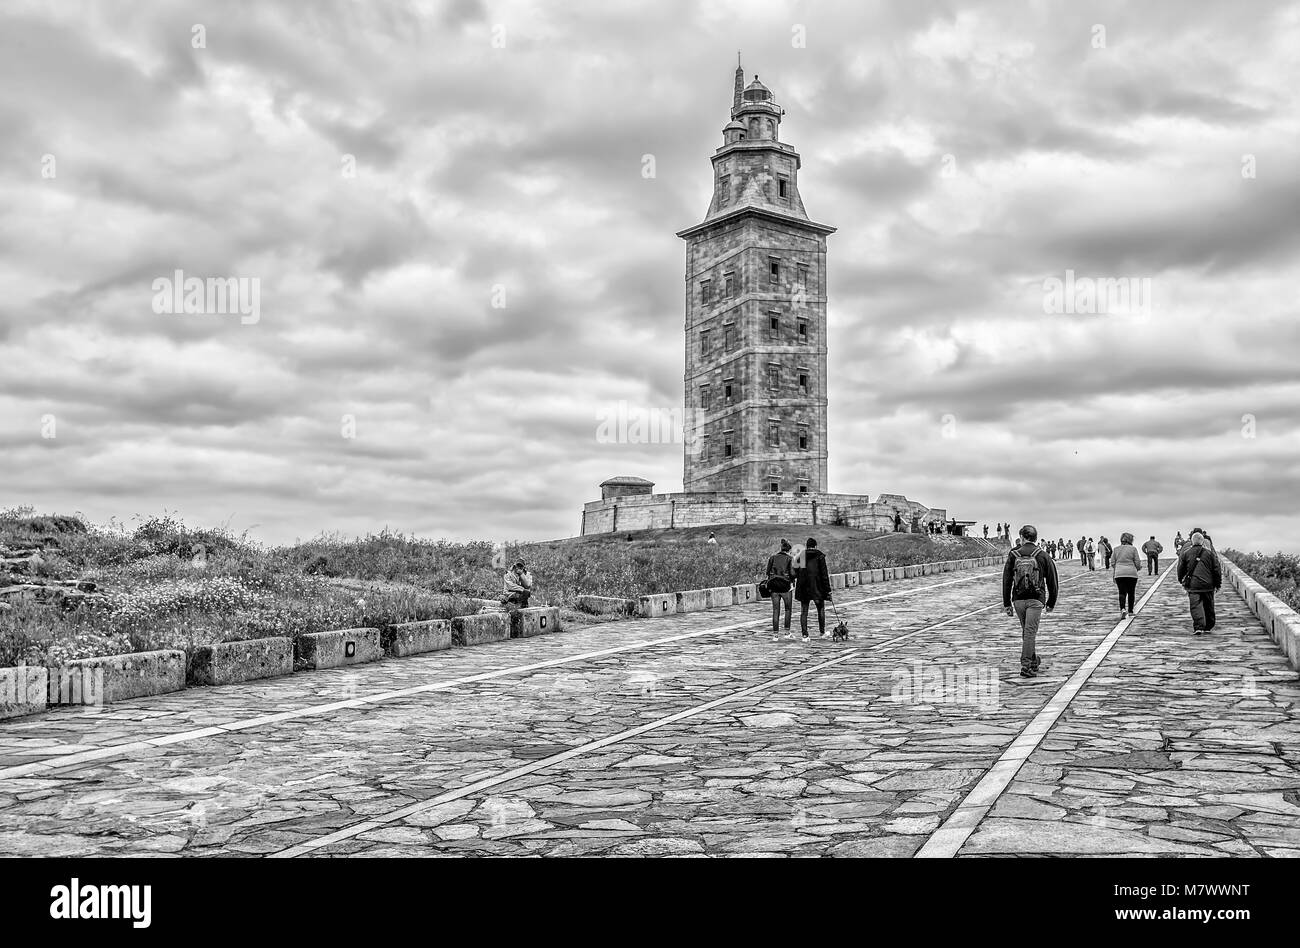 A CORUNA, SPAIN - JUNE 13, 2016: Tower of Hercules in A Coruna, Galicia, Spain Stock Photo